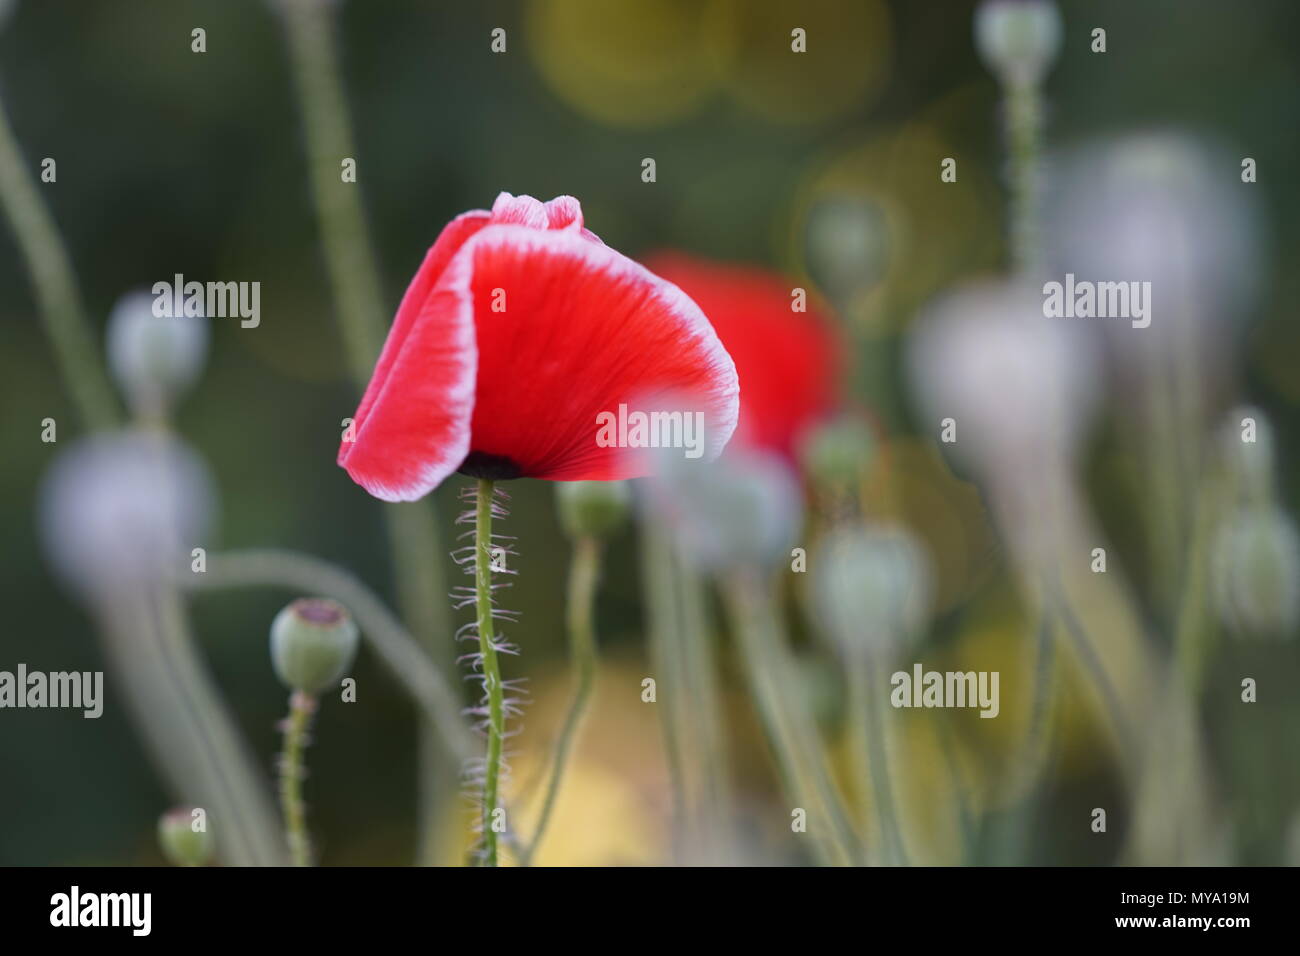 Roter Mohn Mit Einem Weissen Rand Im Garten Stockfotografie Alamy